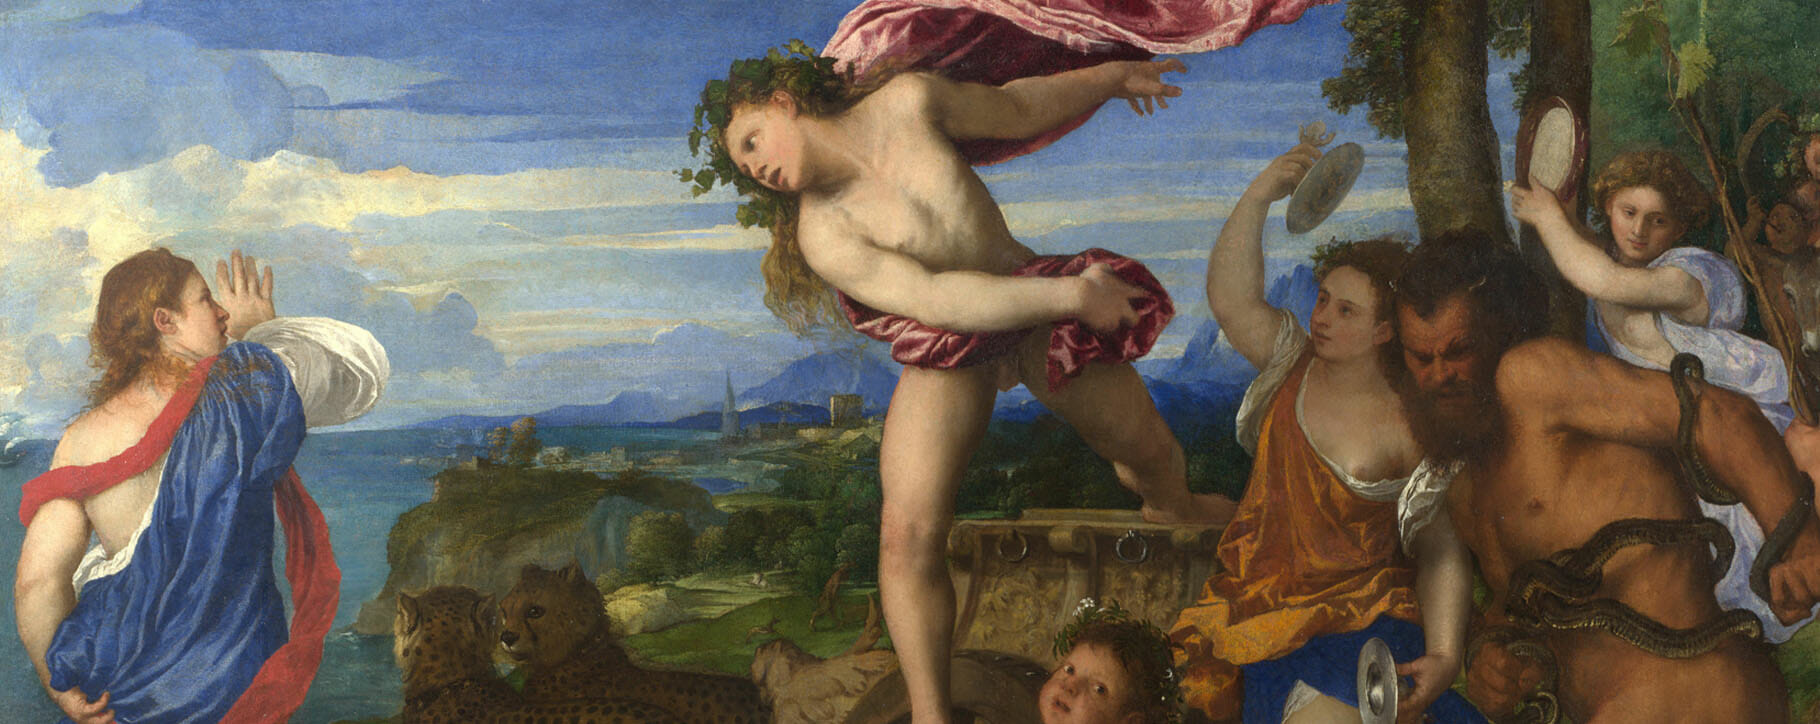 Titian History Painting Mythology